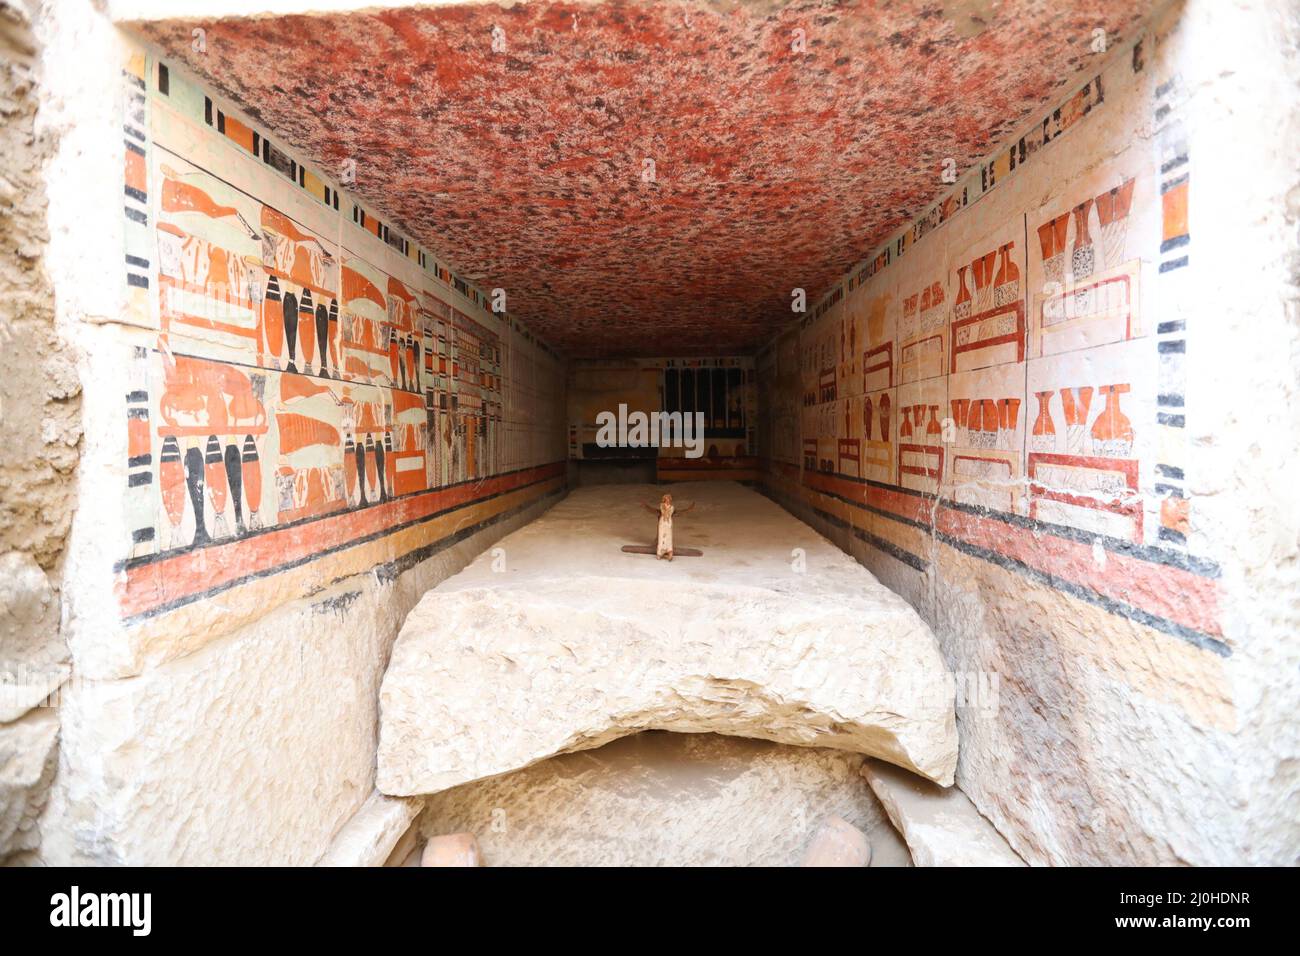 (220319) -- LE CAIRE, 19 mars 2022 (Xinhua) -- la photo montre les peintures murales dans une ancienne tombe découverte aux sites archéologiques de Saqqara au sud-ouest du Caire, en Égypte, le 19 mars 2022. Le ministère égyptien du Tourisme et des Antiquités a annoncé jeudi la découverte de cinq tombes anciennes de 4 000 ans dans les sites archéologiques de Saqqara, au sud-ouest du Caire. Les tombes contiennent des découvertes et des objets datant de la fin de l'ancien Royaume s'étendant de 2686 BC à 2181 BC et le début de la première période intermédiaire s'étendant de 2181 BC à 2055 BC. ALLER AVEC 'l'Egypte découvre cinq 4, 0 Banque D'Images